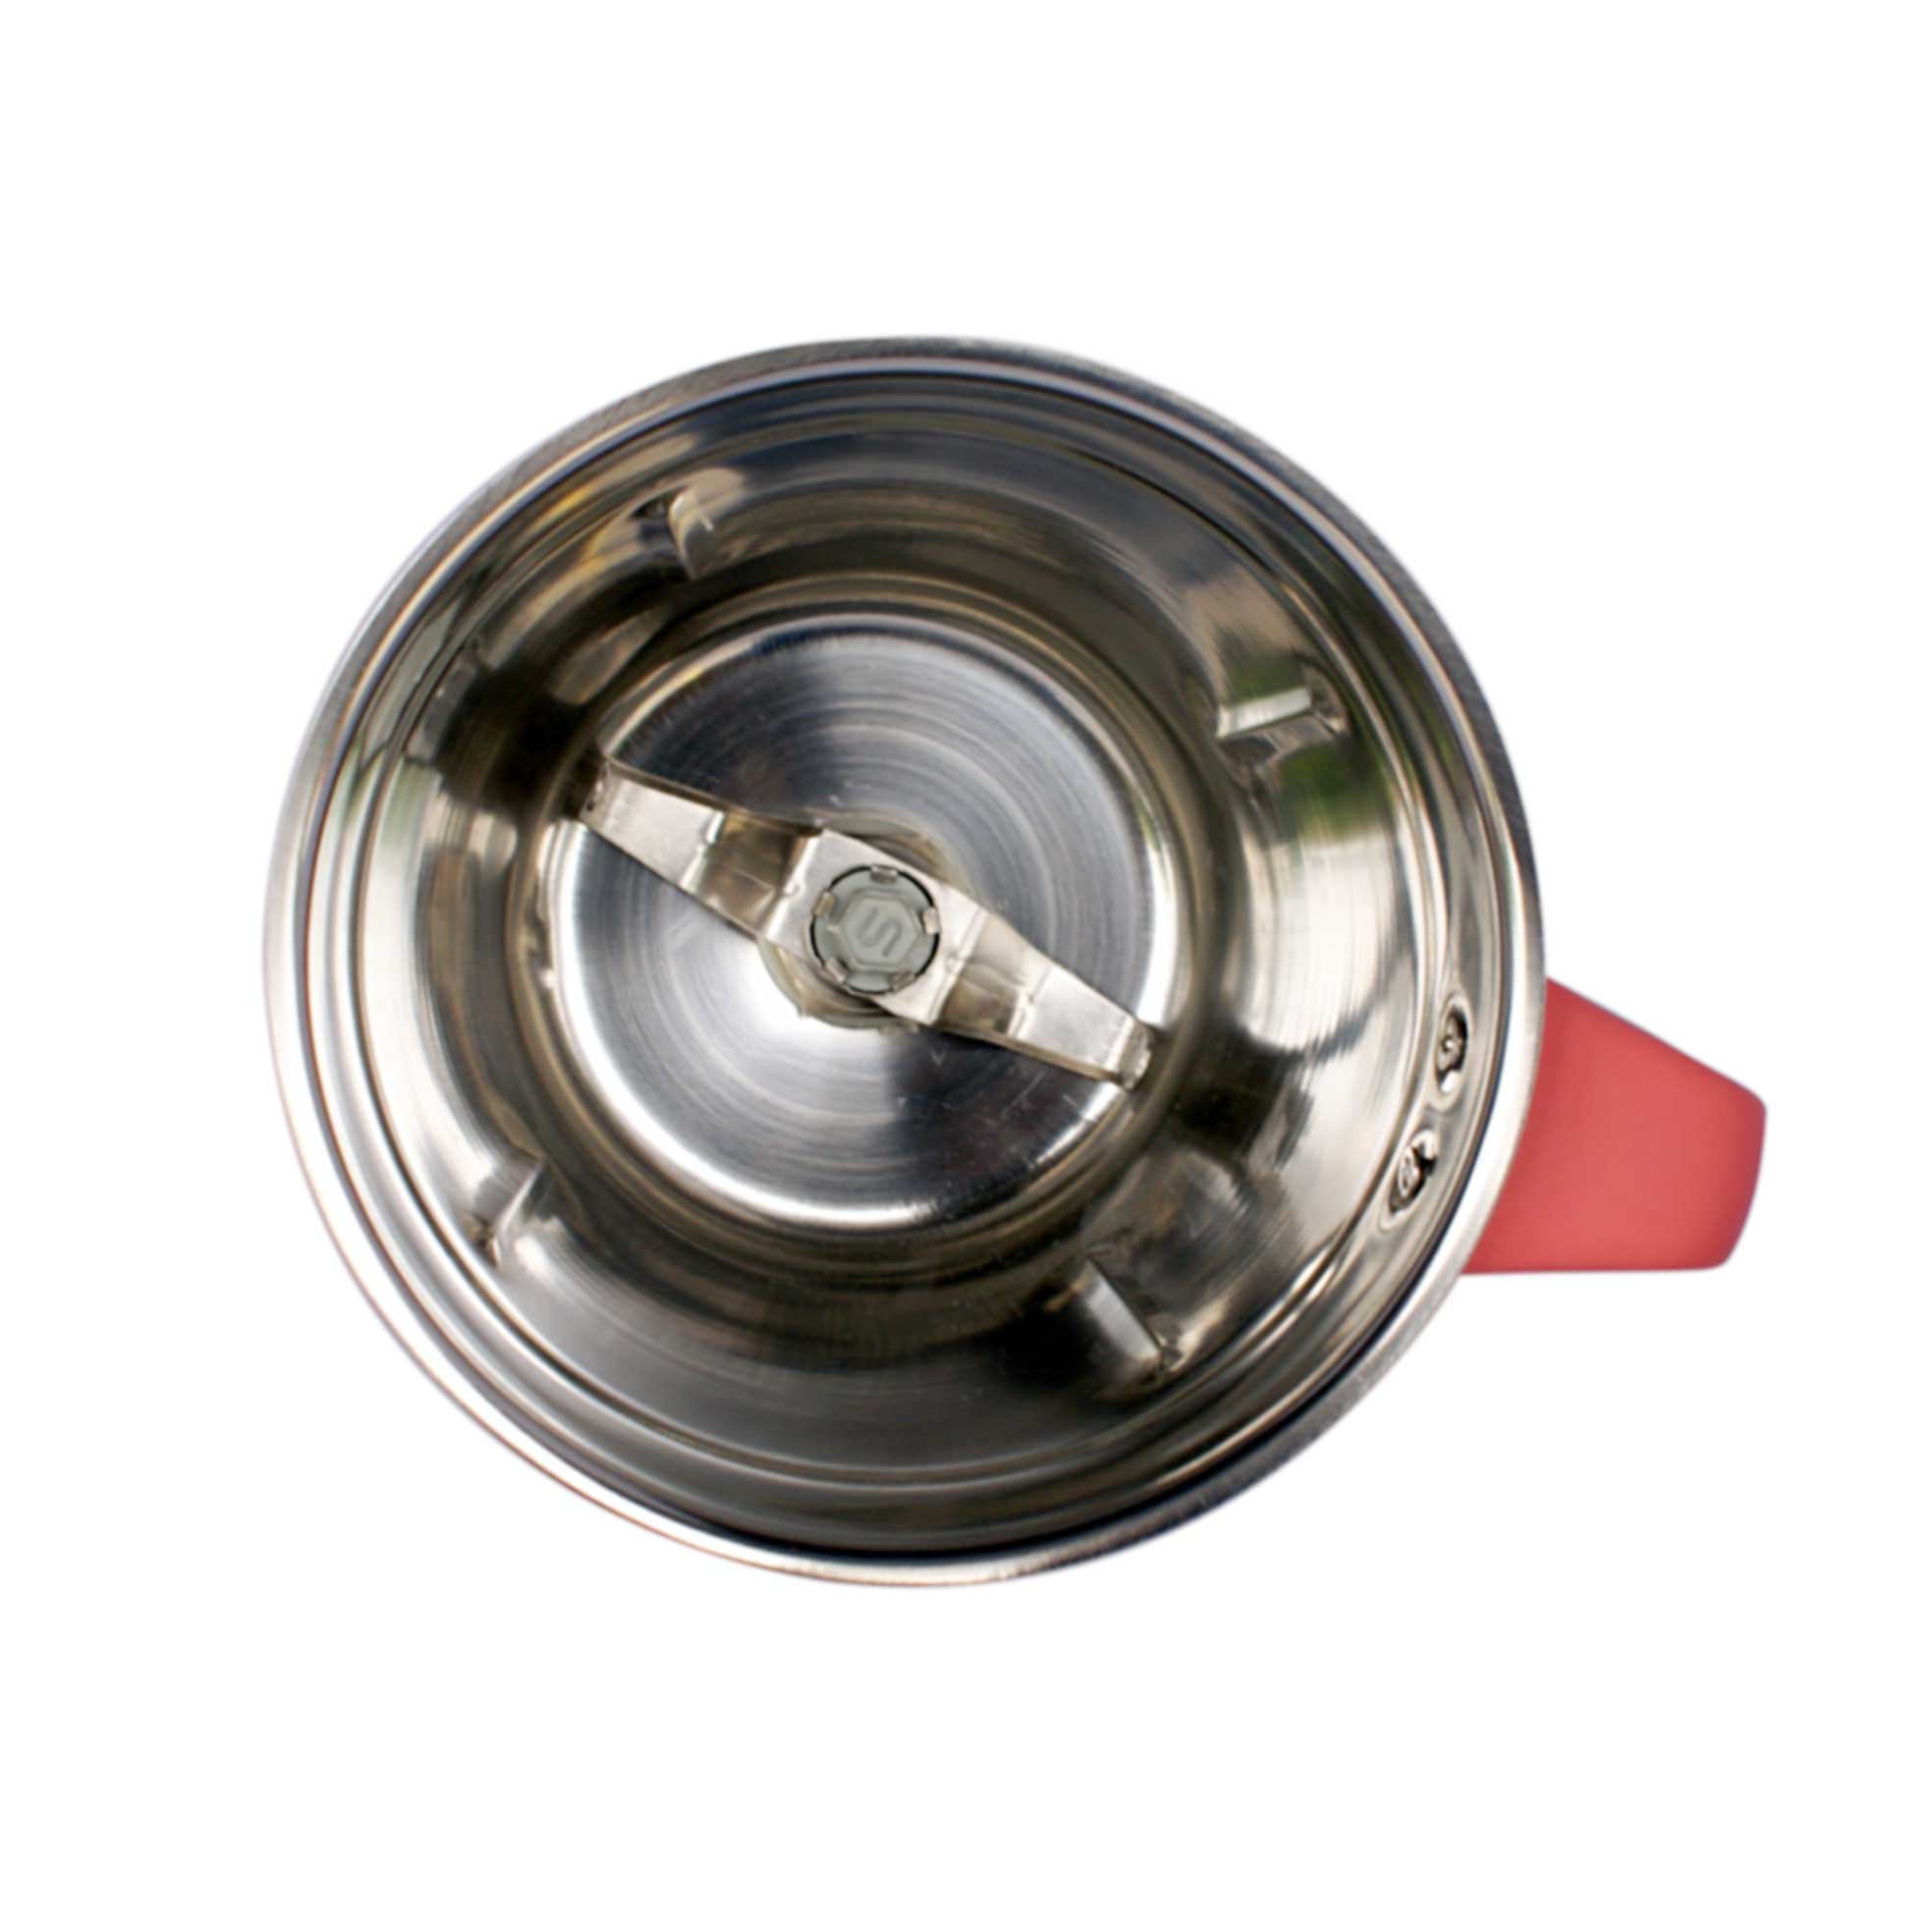 Chef Pro CMG615 Mixer Grinder Dry Grinder Jar